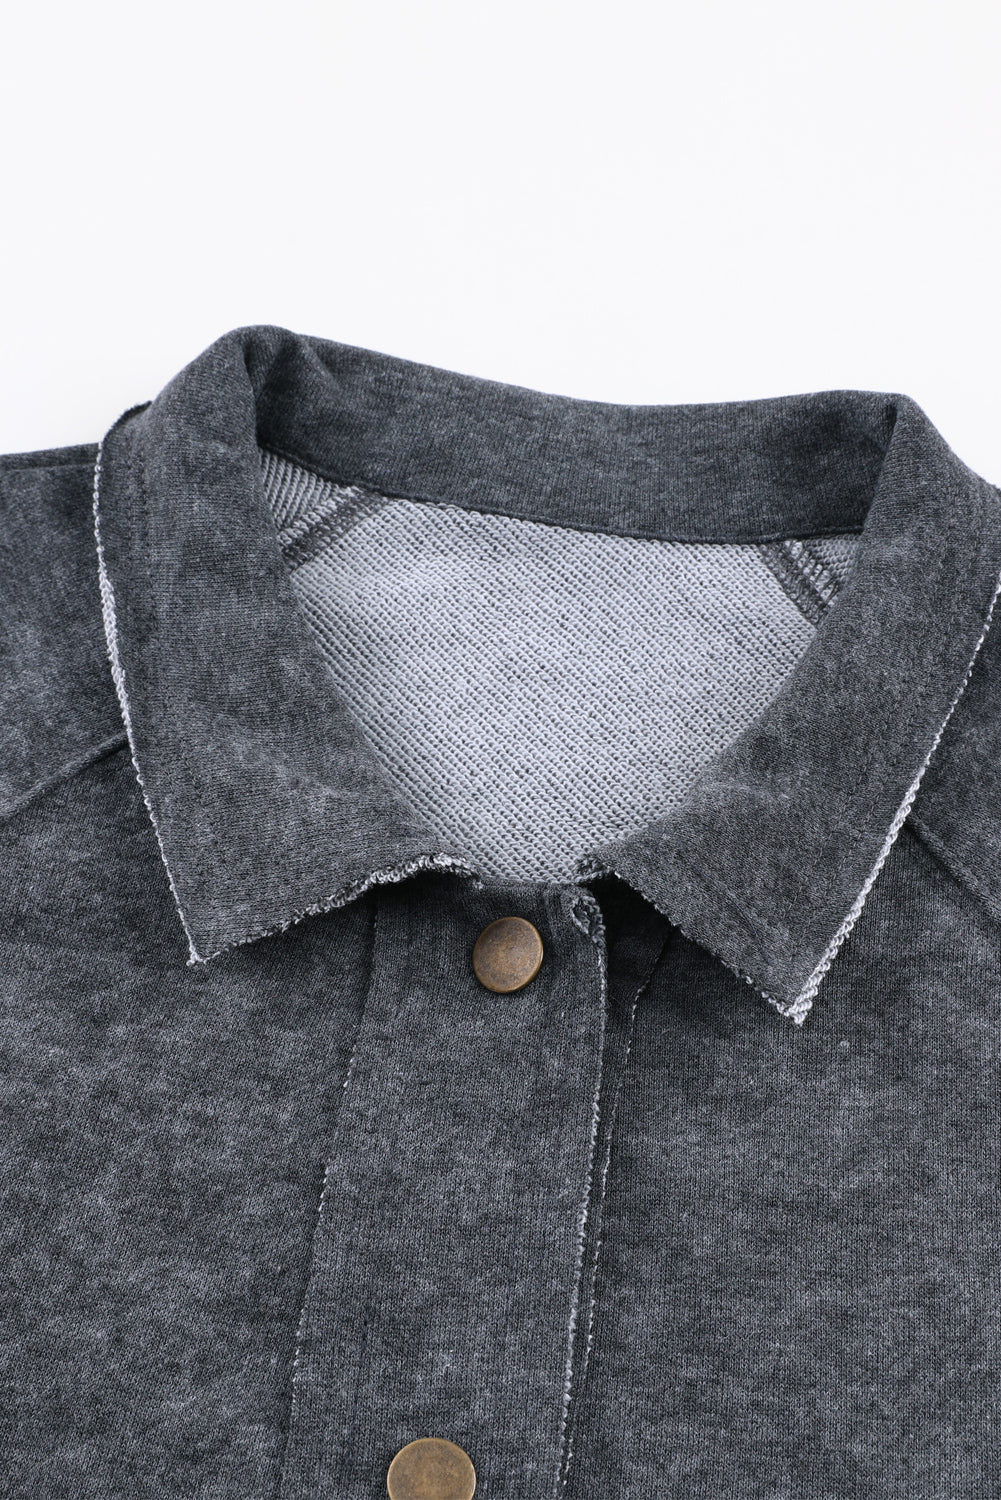 Graue Vintage-Jacke mit Knopfleiste und verwaschener Patte